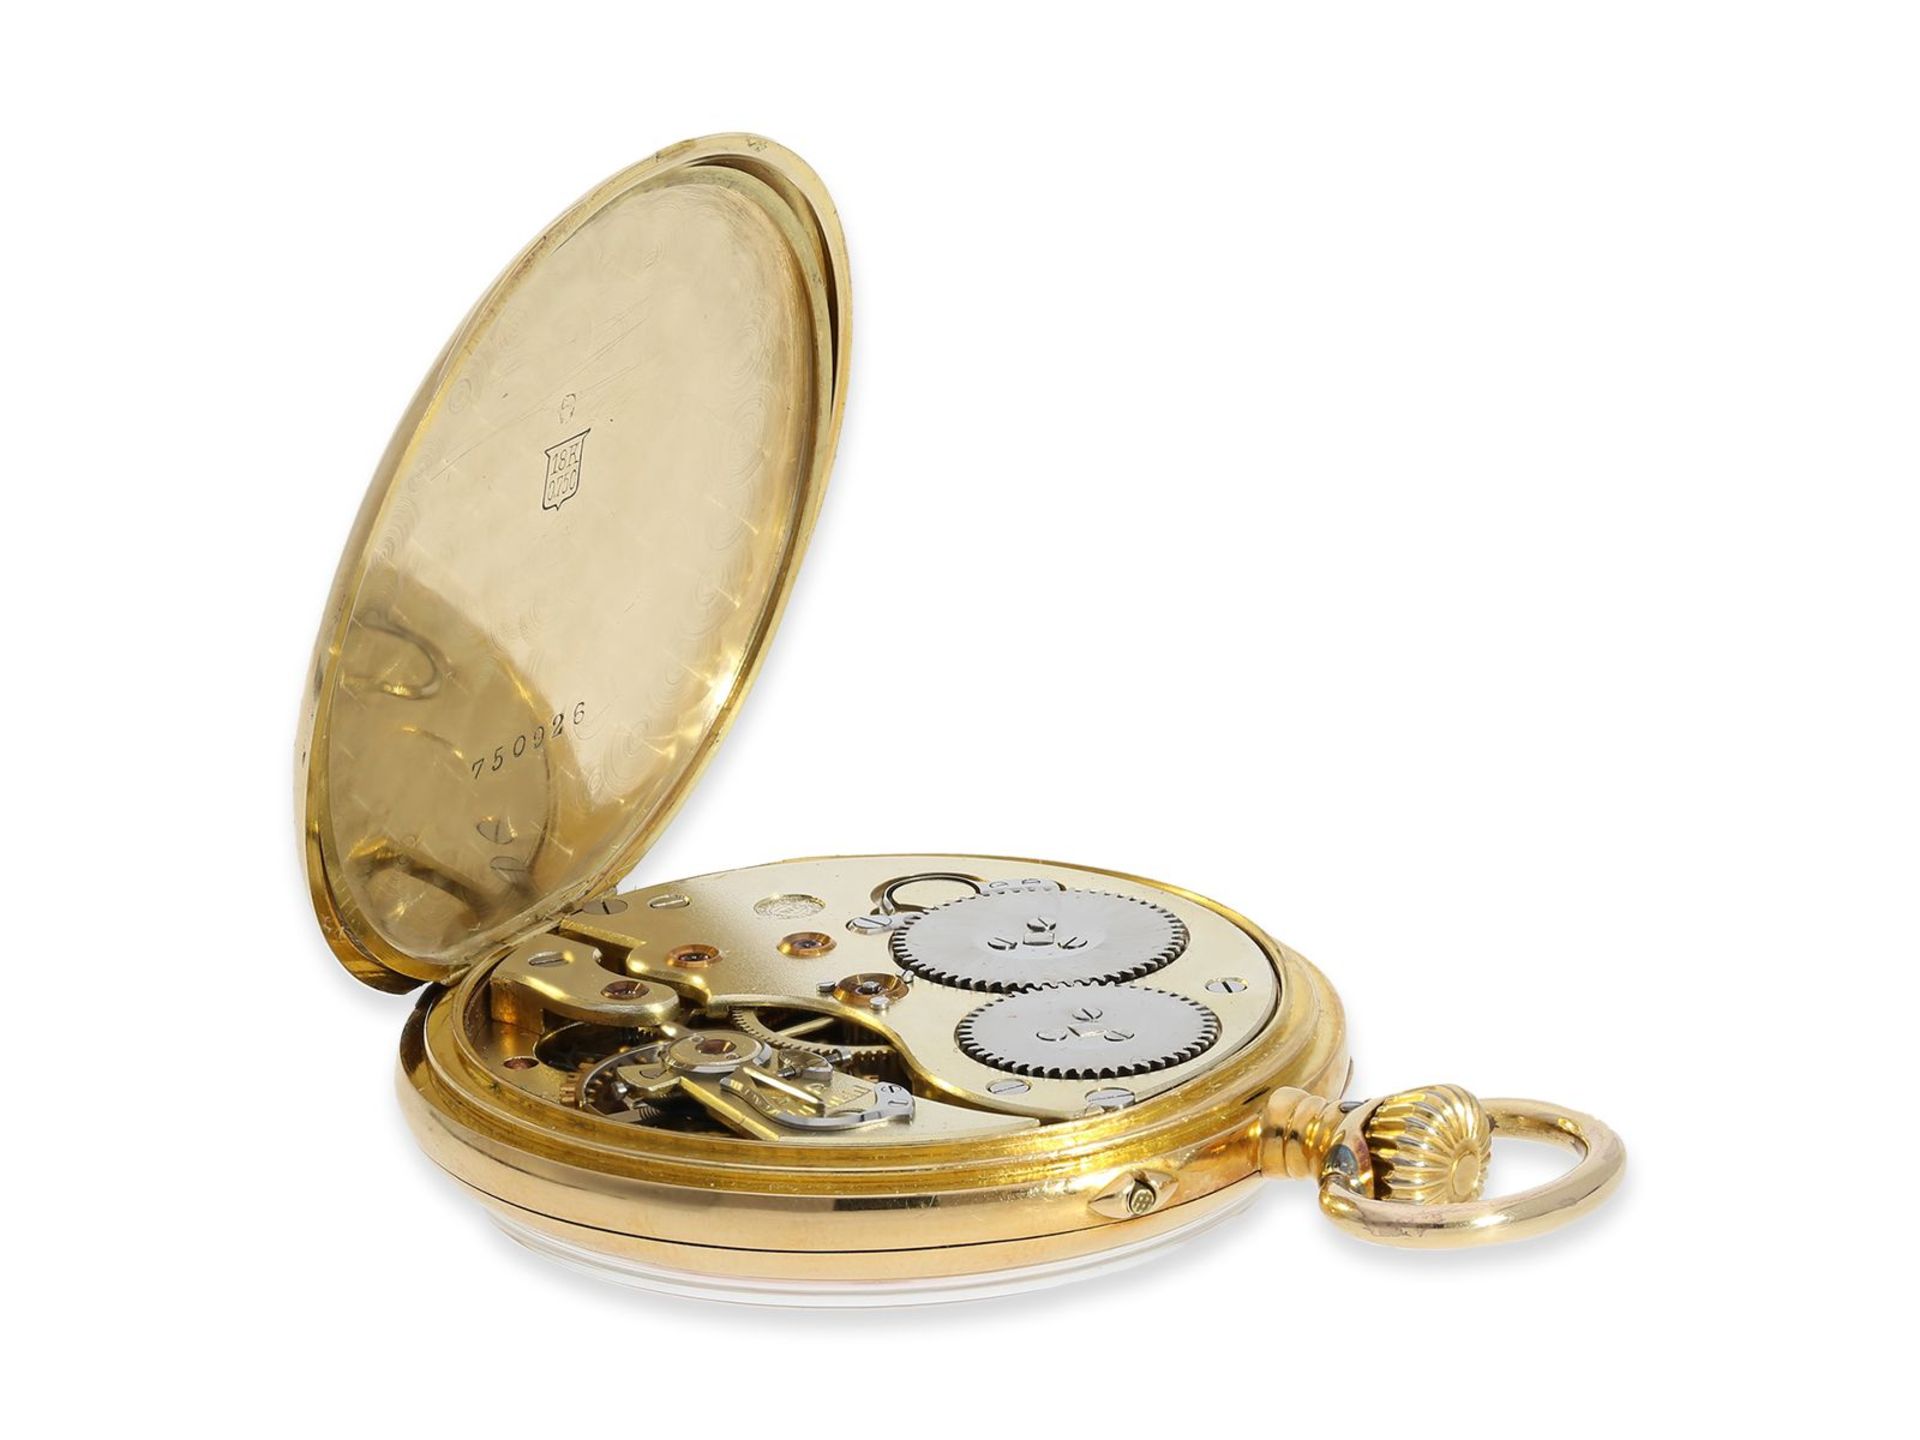 Taschenuhr: sehr seltene IWC in Chronometerqualität, bez. "CHRONOMETRE", ca.1917, Ca. Ø48,5mm, ca. - Bild 5 aus 6